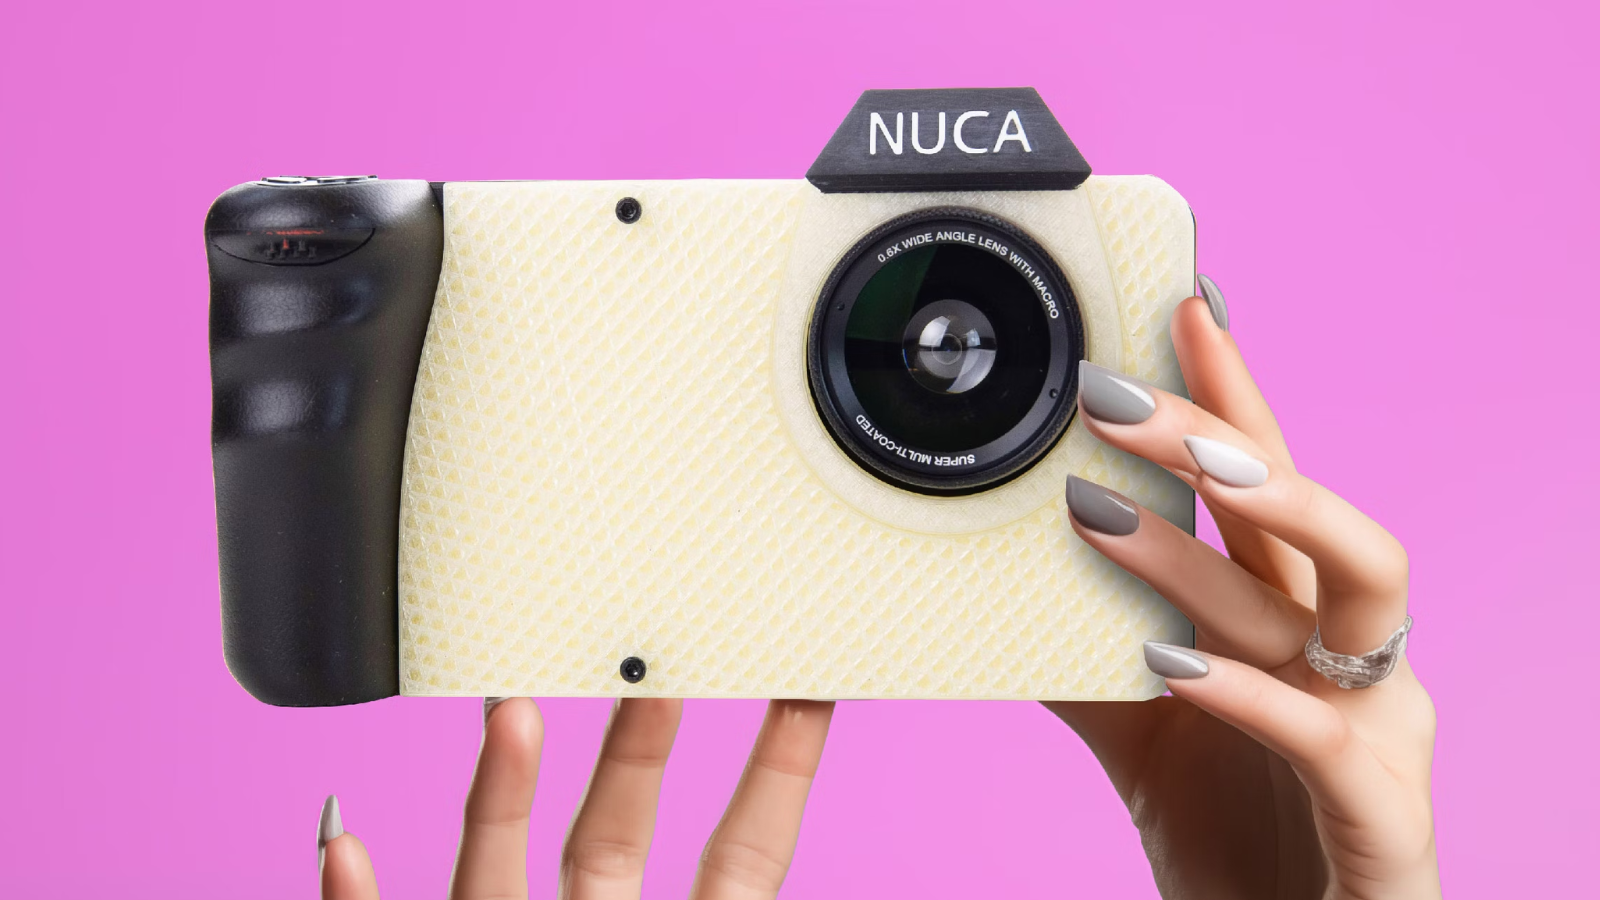 Conheça nuca, a câmera para transformar fotos em nudes. (foto: reprodução/nuca)